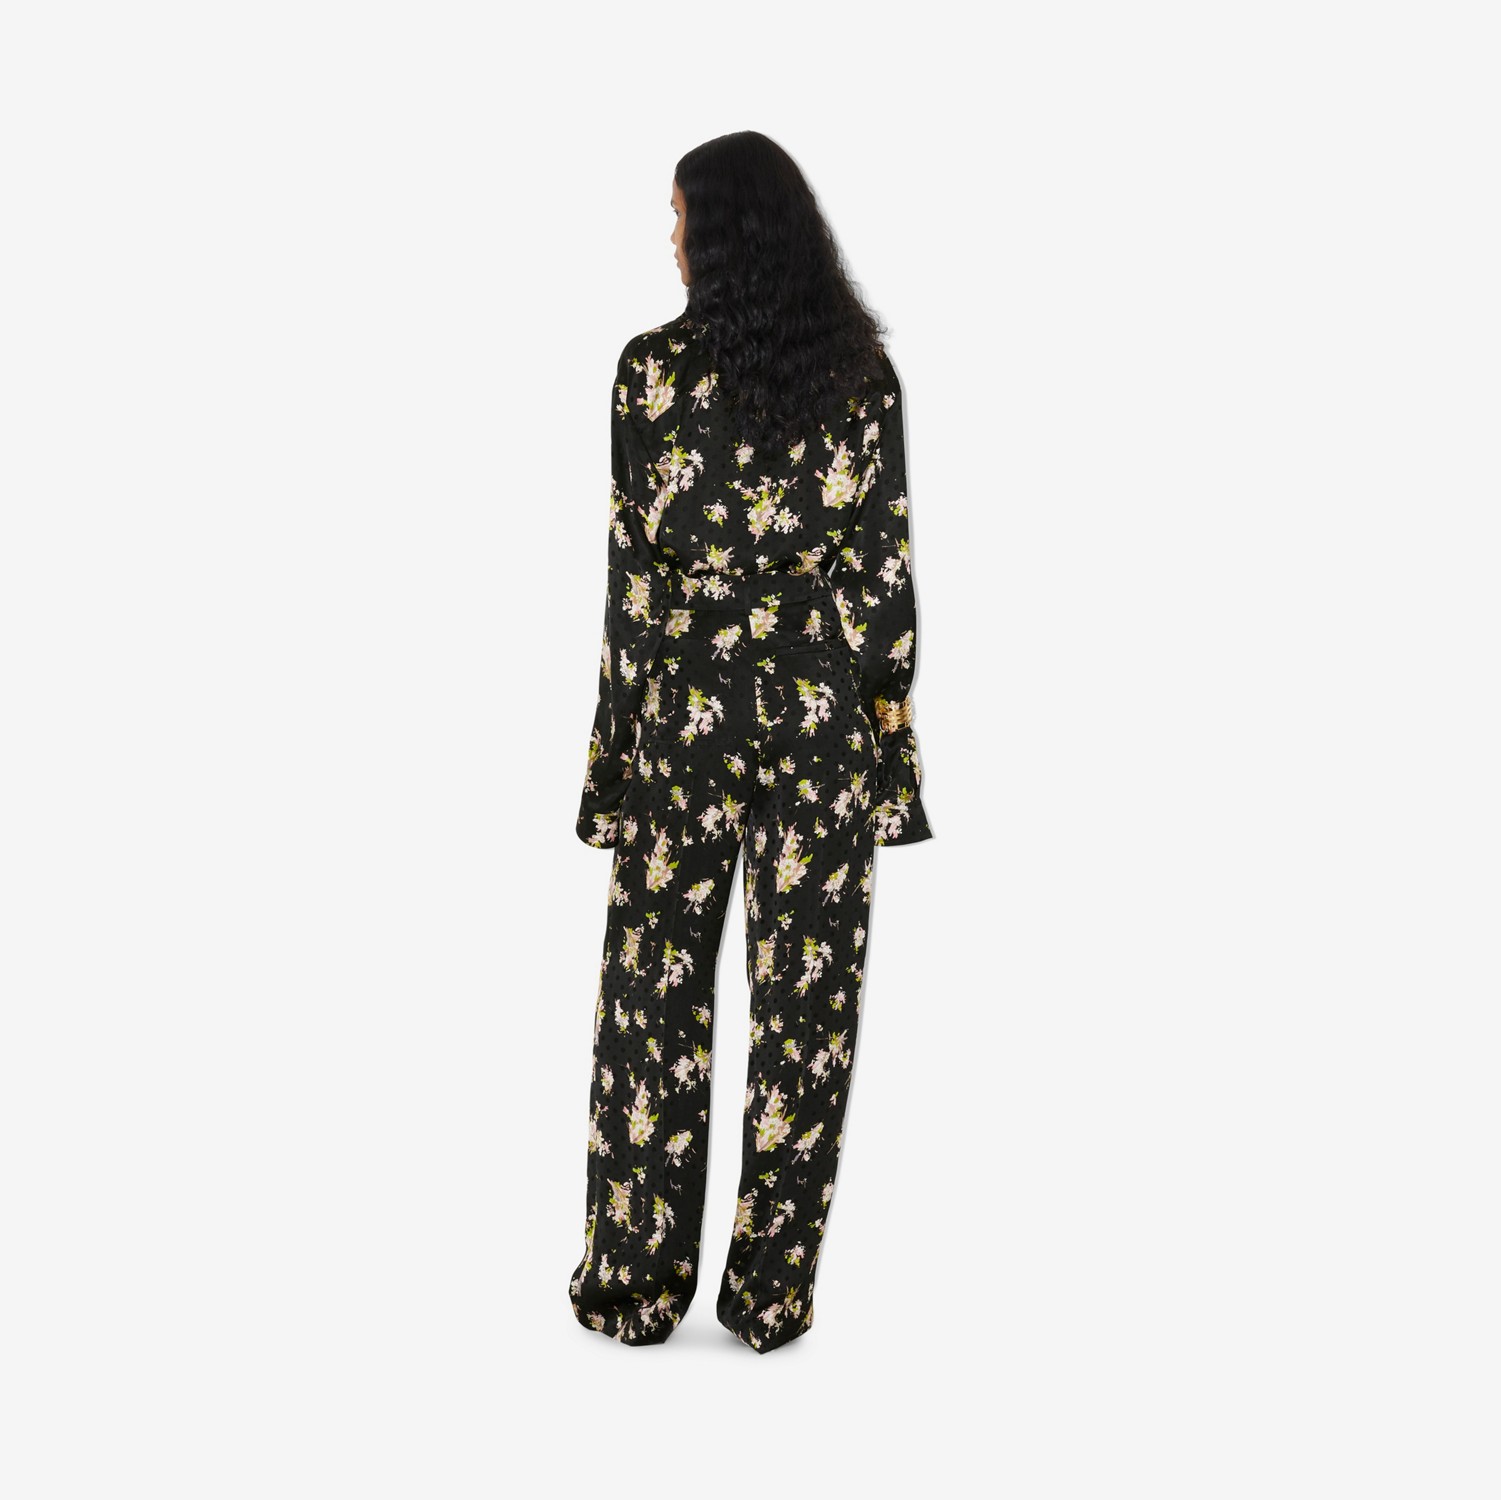 Camisa estilo pijama de viscose com estampa floral (Preto) - Mulheres | Burberry® oficial